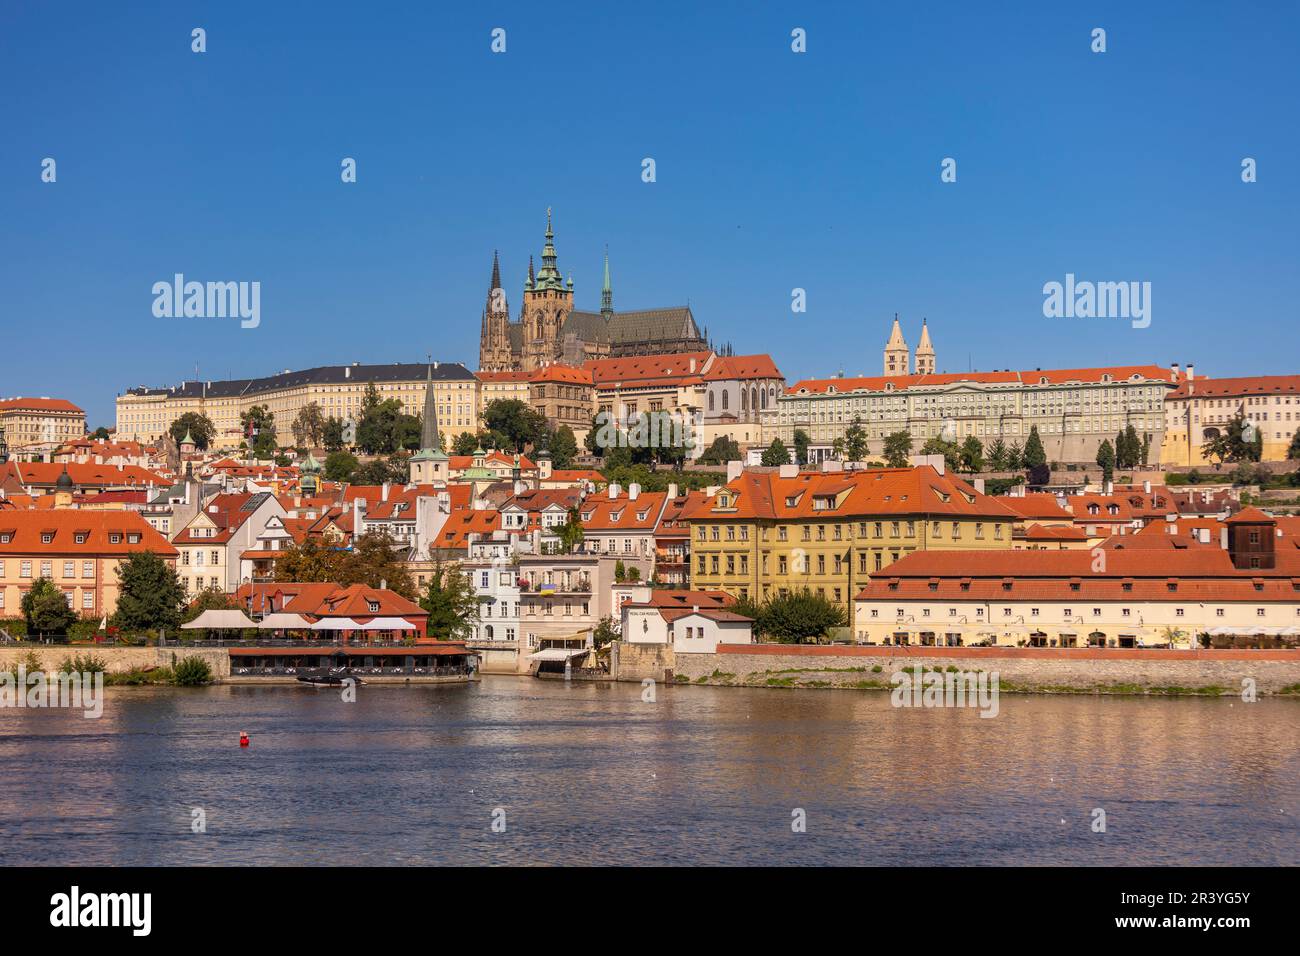 PRAG, TSCHECHISCHE REPUBLIK, EUROPA - Prager Skyline mit Prager Burg und St. Veitsdom und Burgviertel, Hradcany, auf der Moldau. Stockfoto